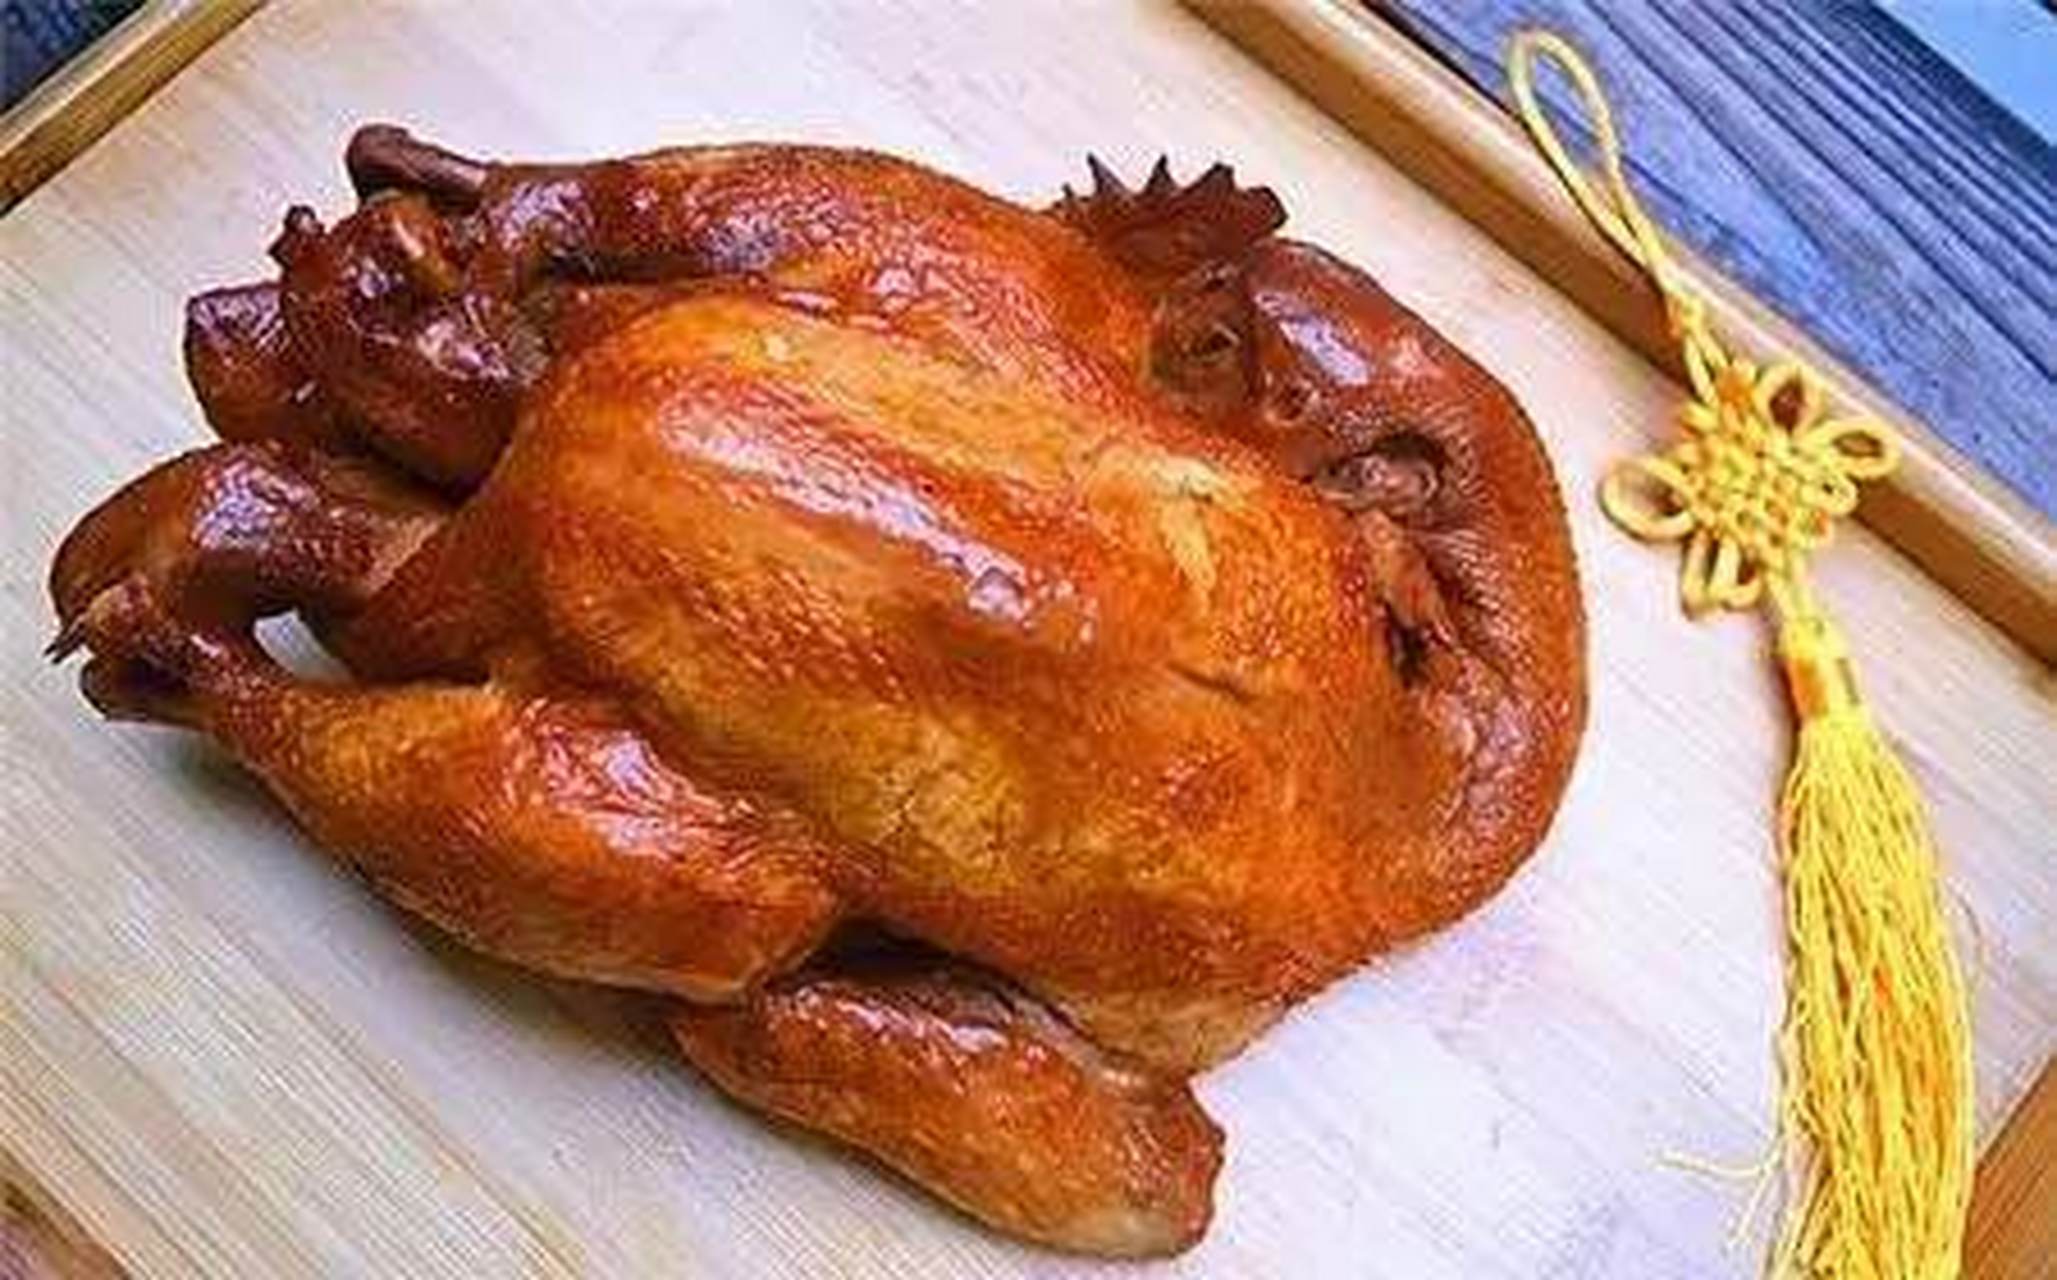 会吃最光荣#符离集烧鸡源于德州扒鸡,是由德州一厨师迁居安徽宿州